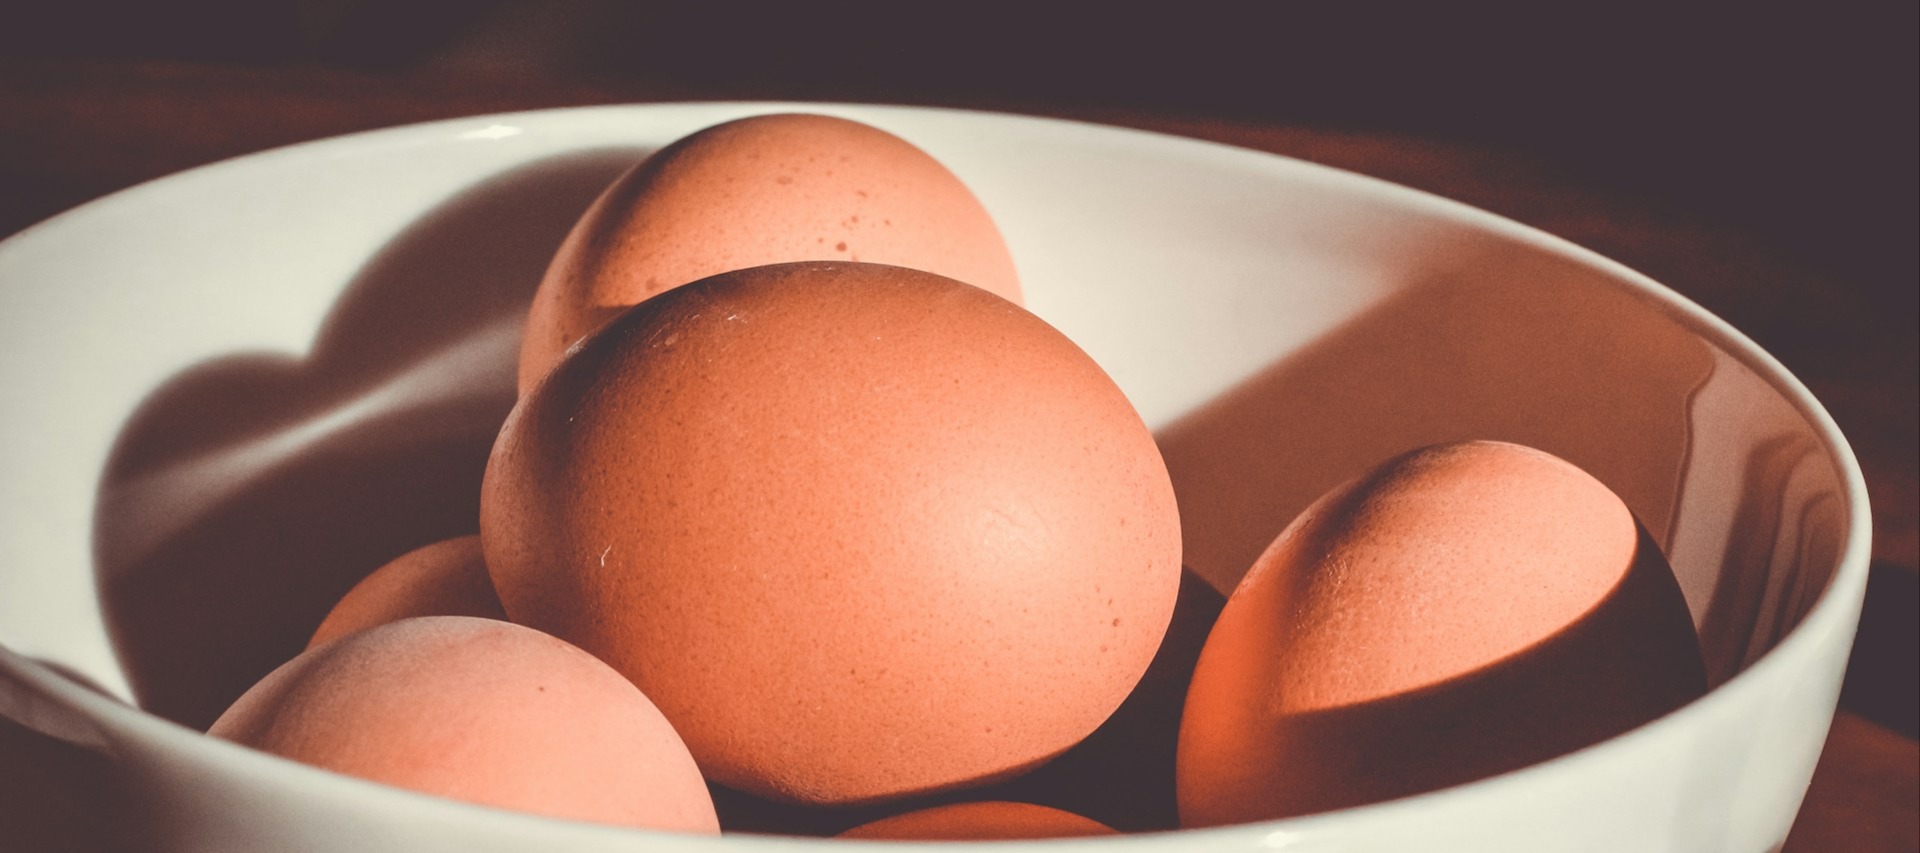 Фото новости: "ФАС возбудила 10 антимонопольных дел из-за завышенных цен на яйца"